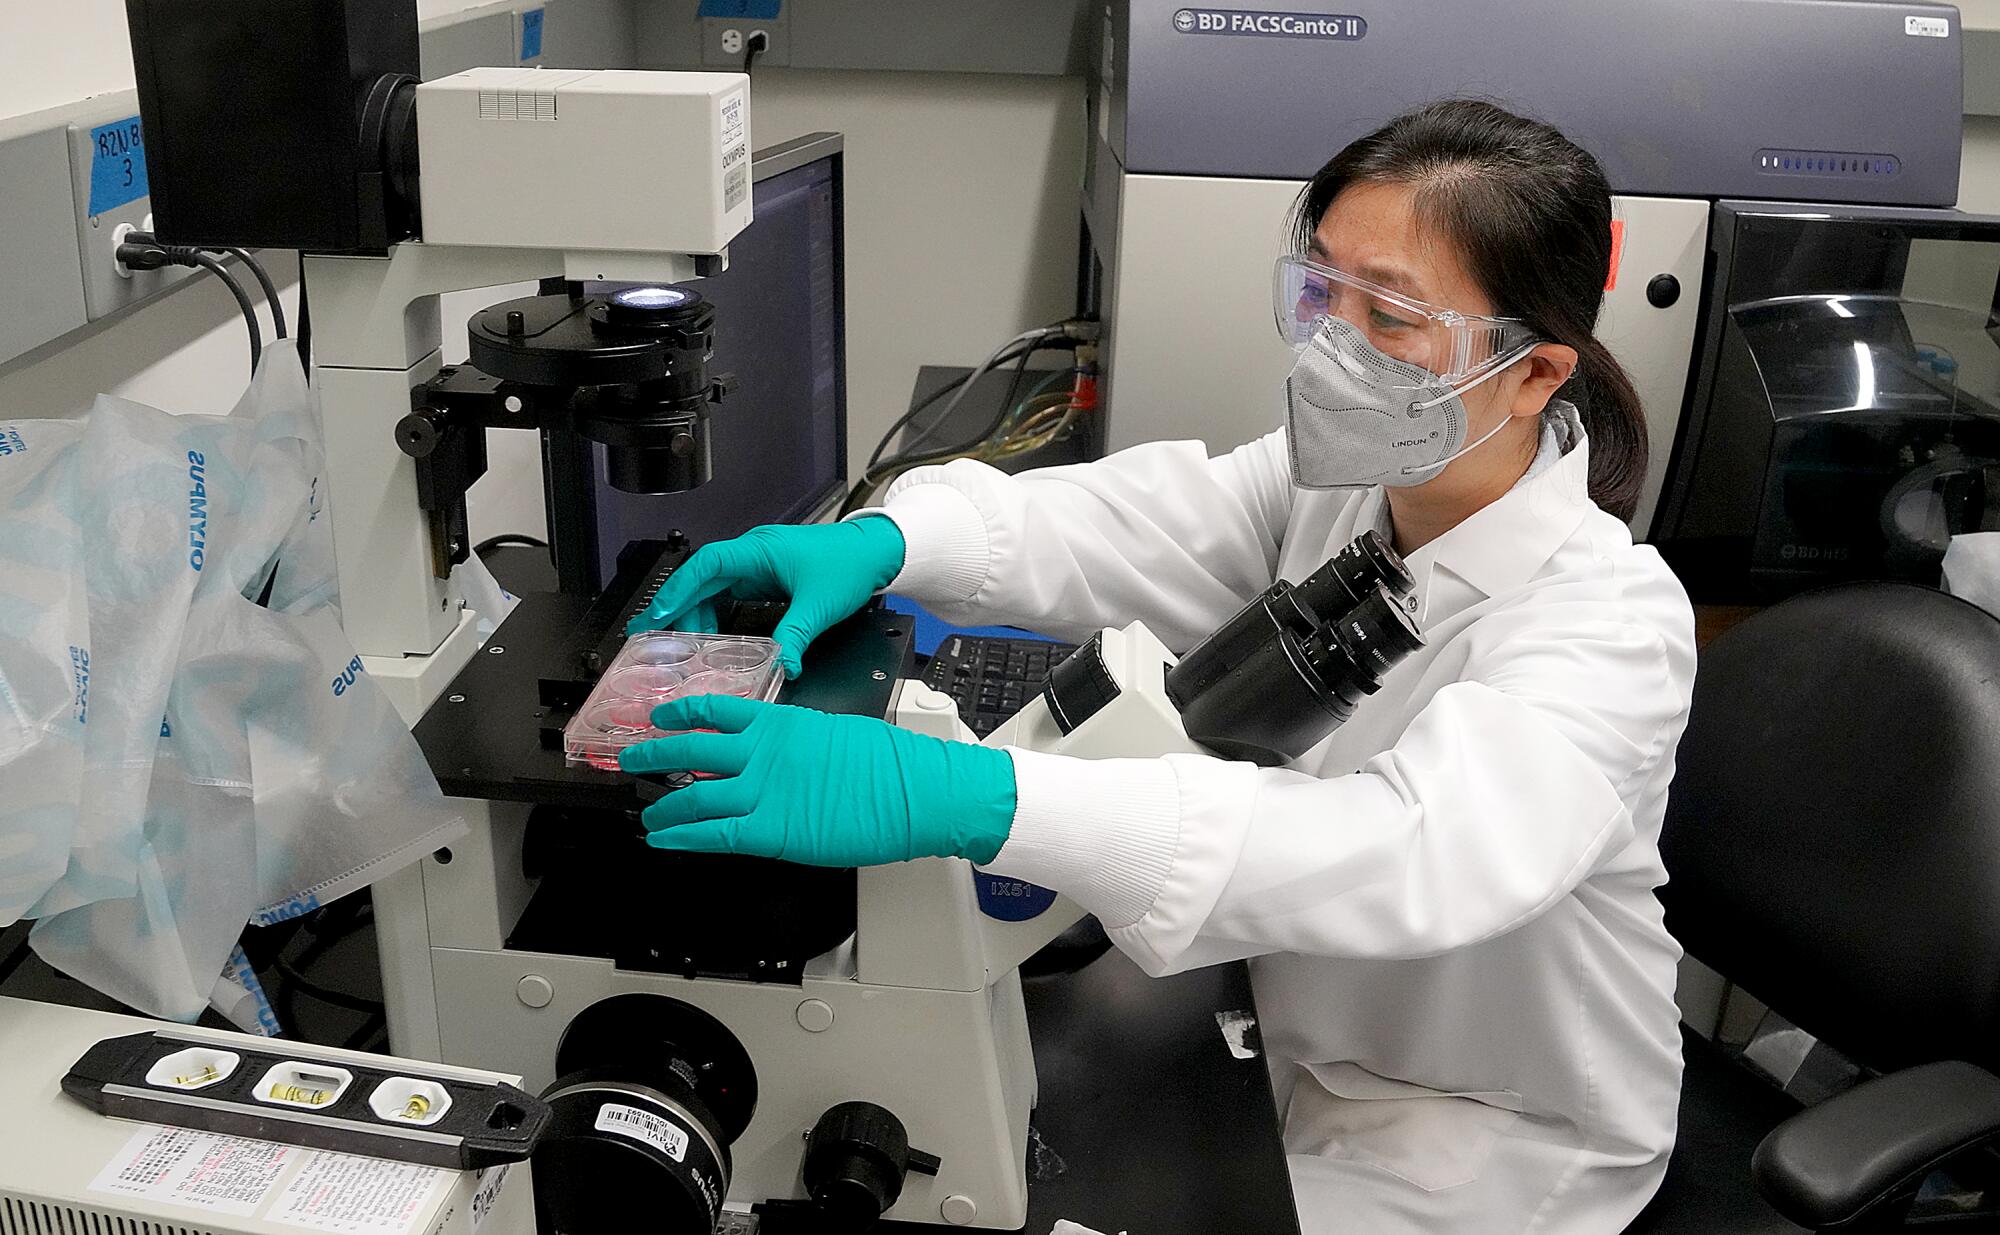 Maoli Yuan prepares to look at samples at a microscope.